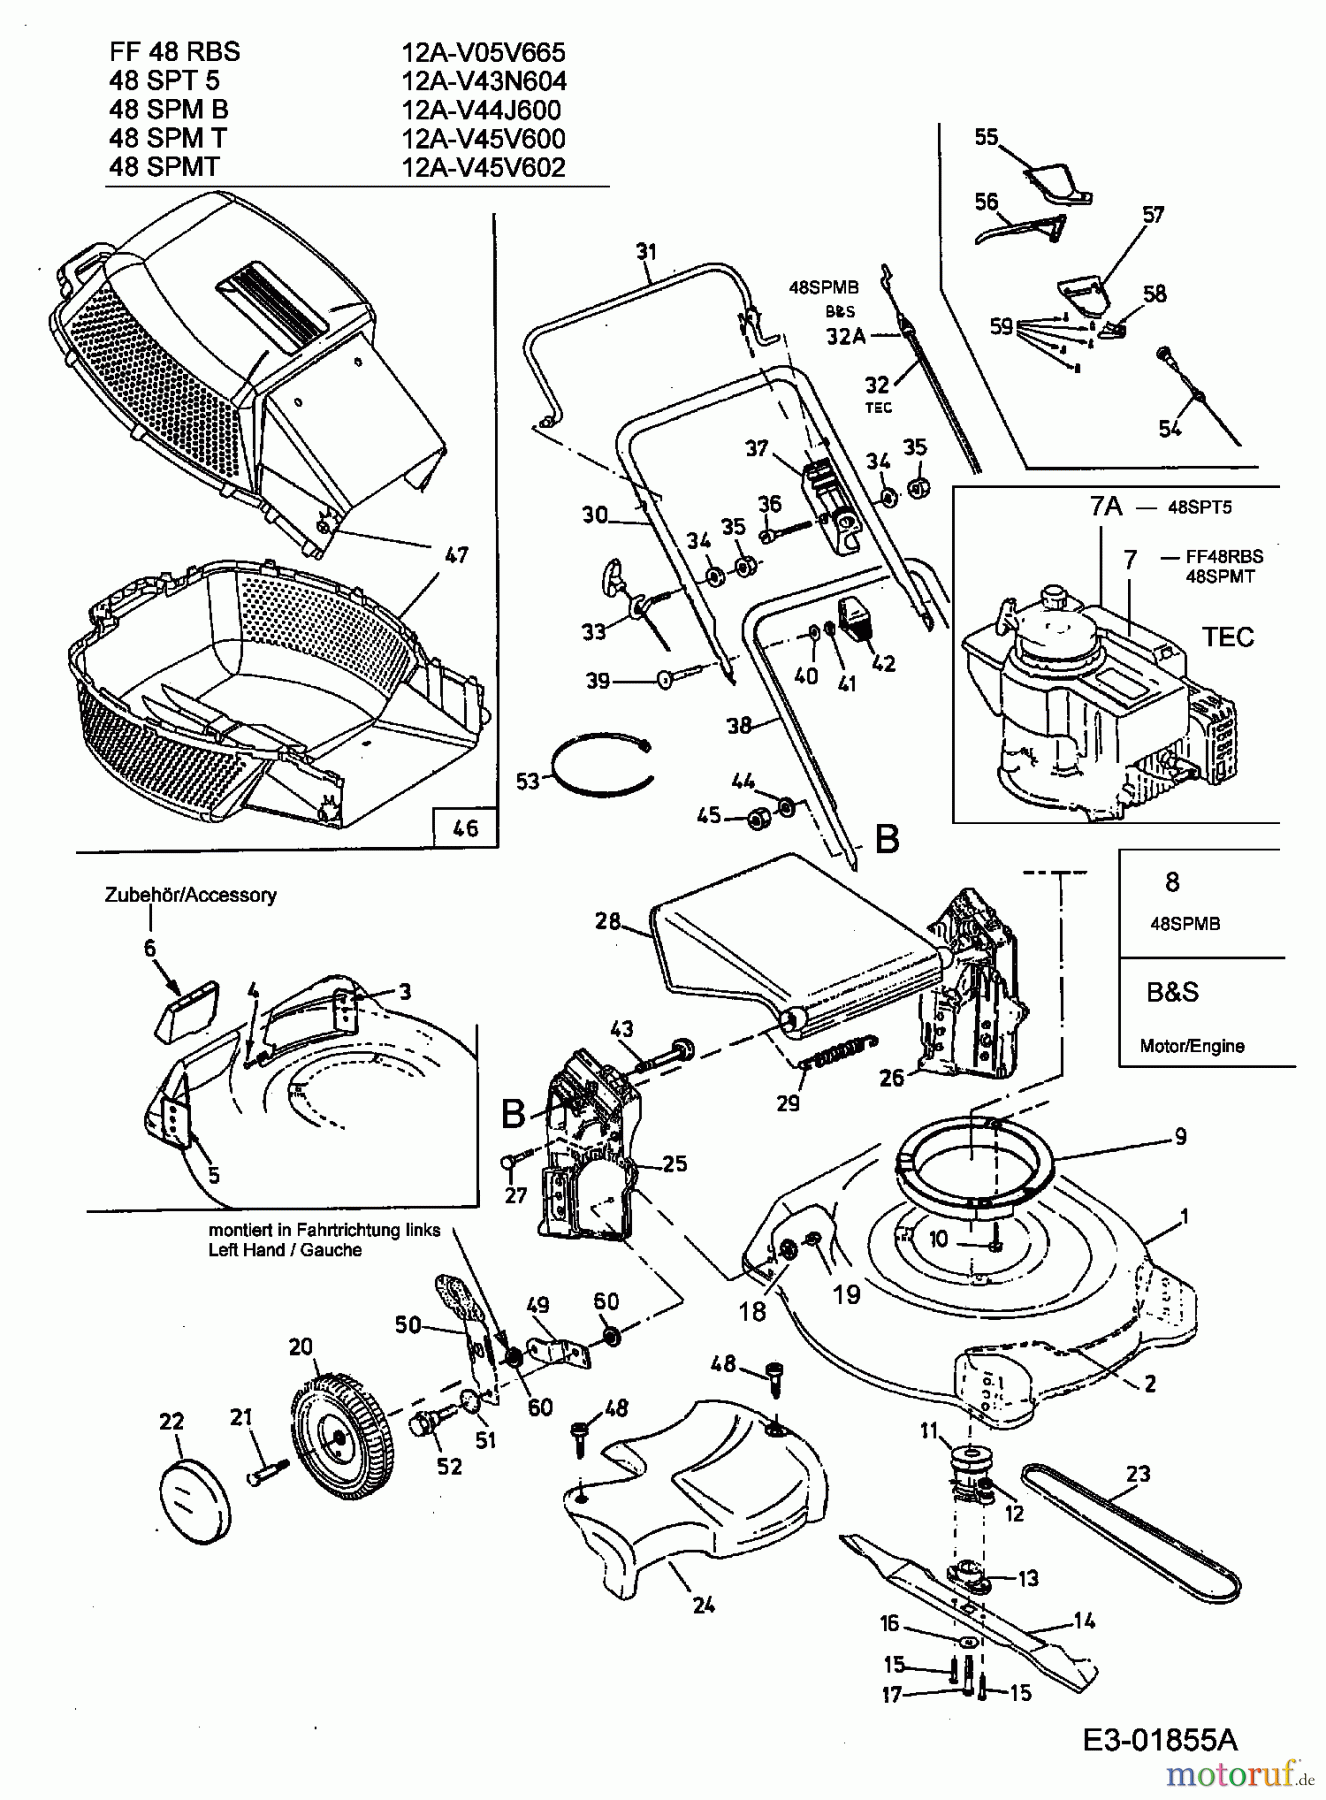  MTD Motormäher mit Antrieb 48 SPMT 12A-V45V602  (2003) Grundgerät